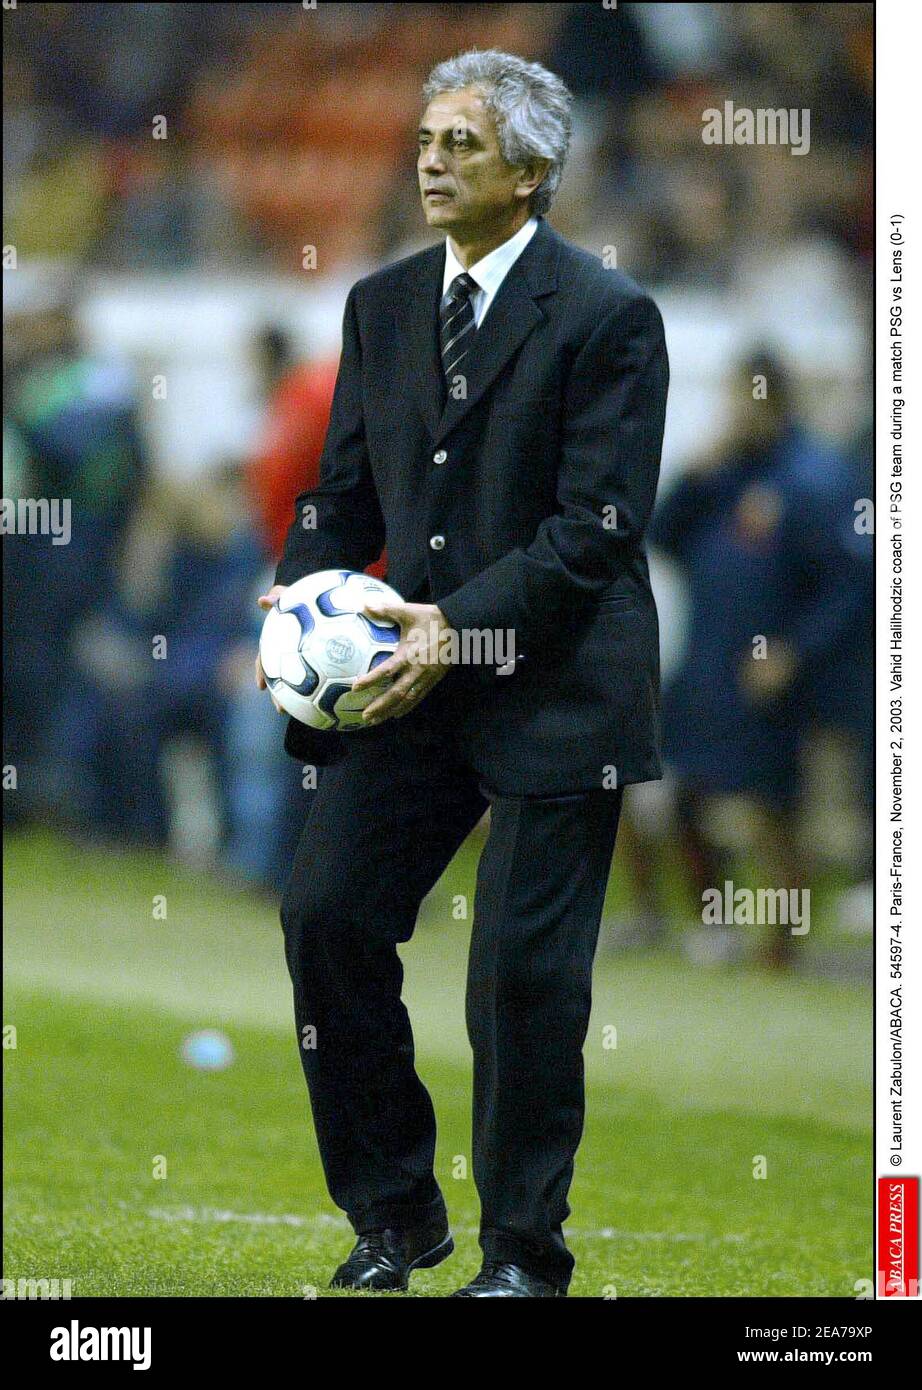 Laurent Zabulon/ABACA. 54597-4. París-Francia, 2 de noviembre de 2003.  Vahid Halilhodzic entrenador del equipo PSG durante un partido PSG vs Lens  (0-1 Fotografía de stock - Alamy